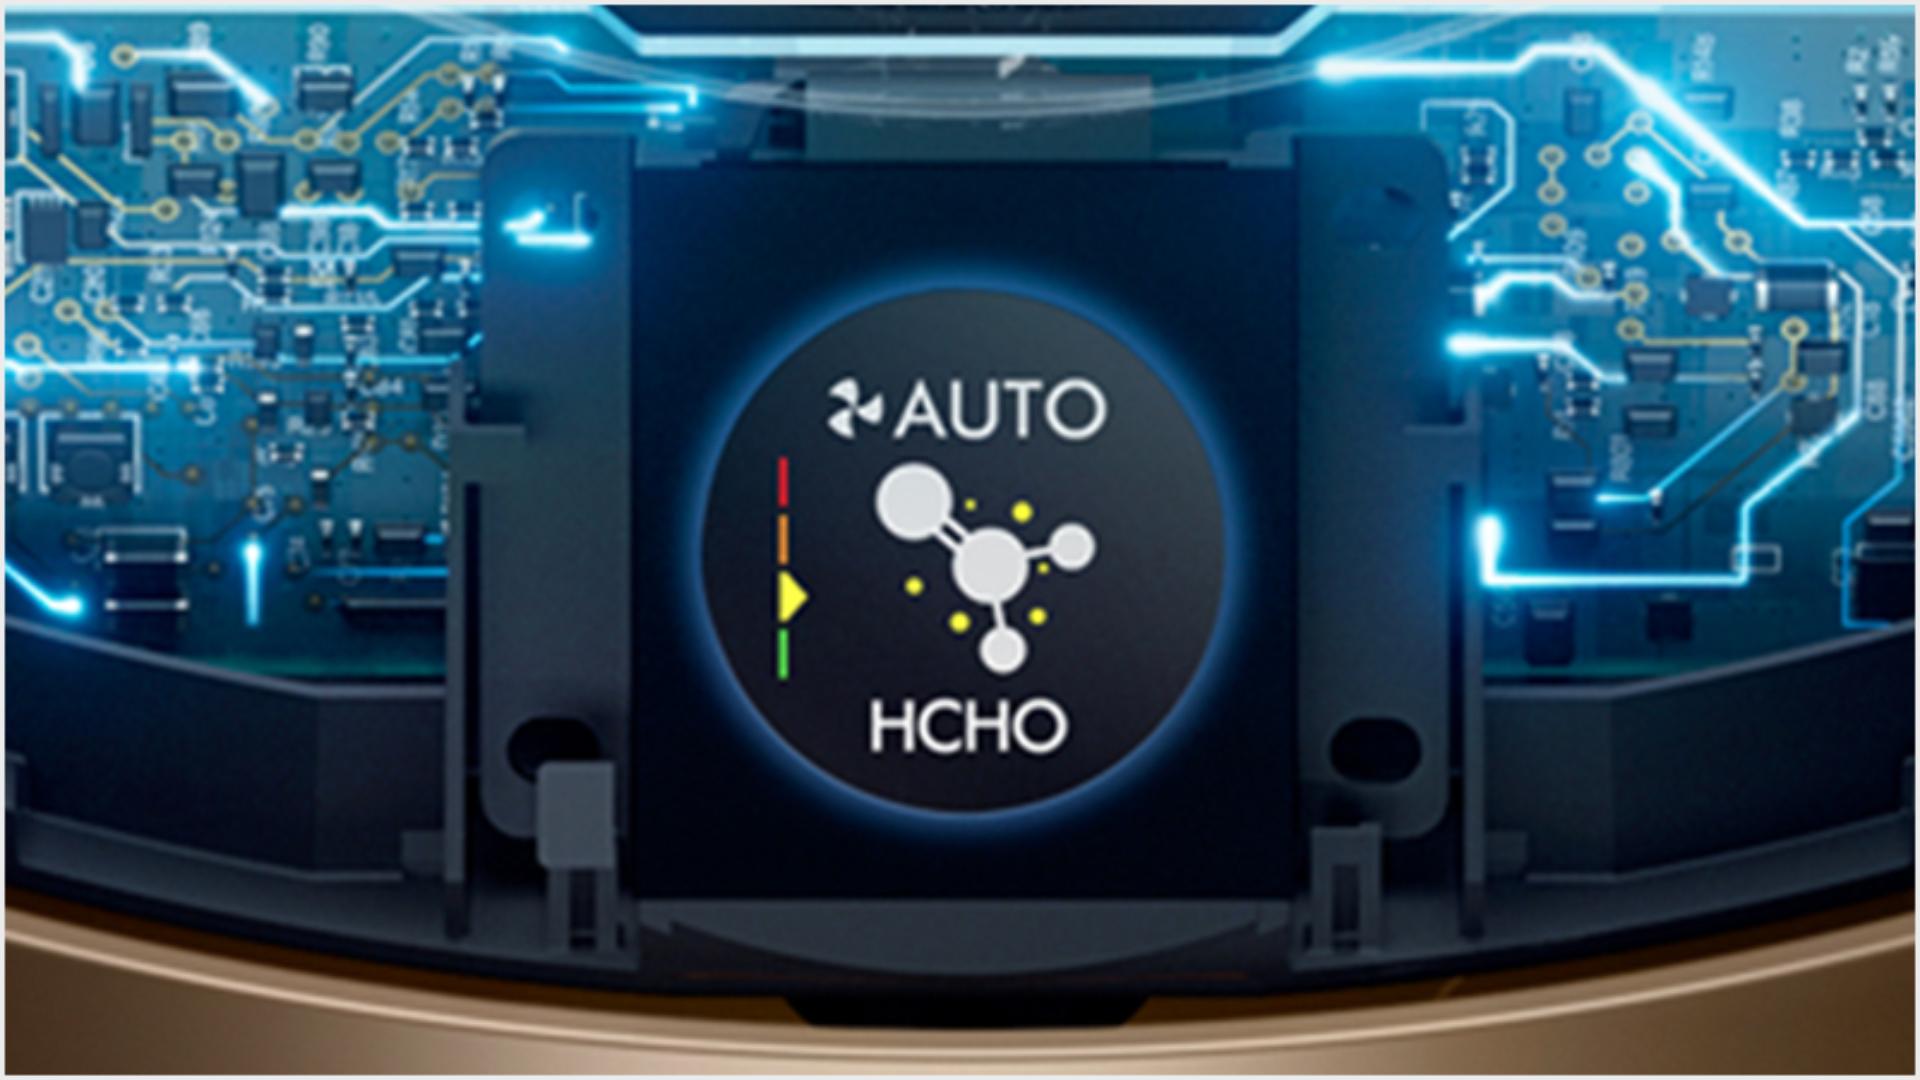 Interná technológia snímania a LCD displej zobrazujúci kvalitu vzduchu